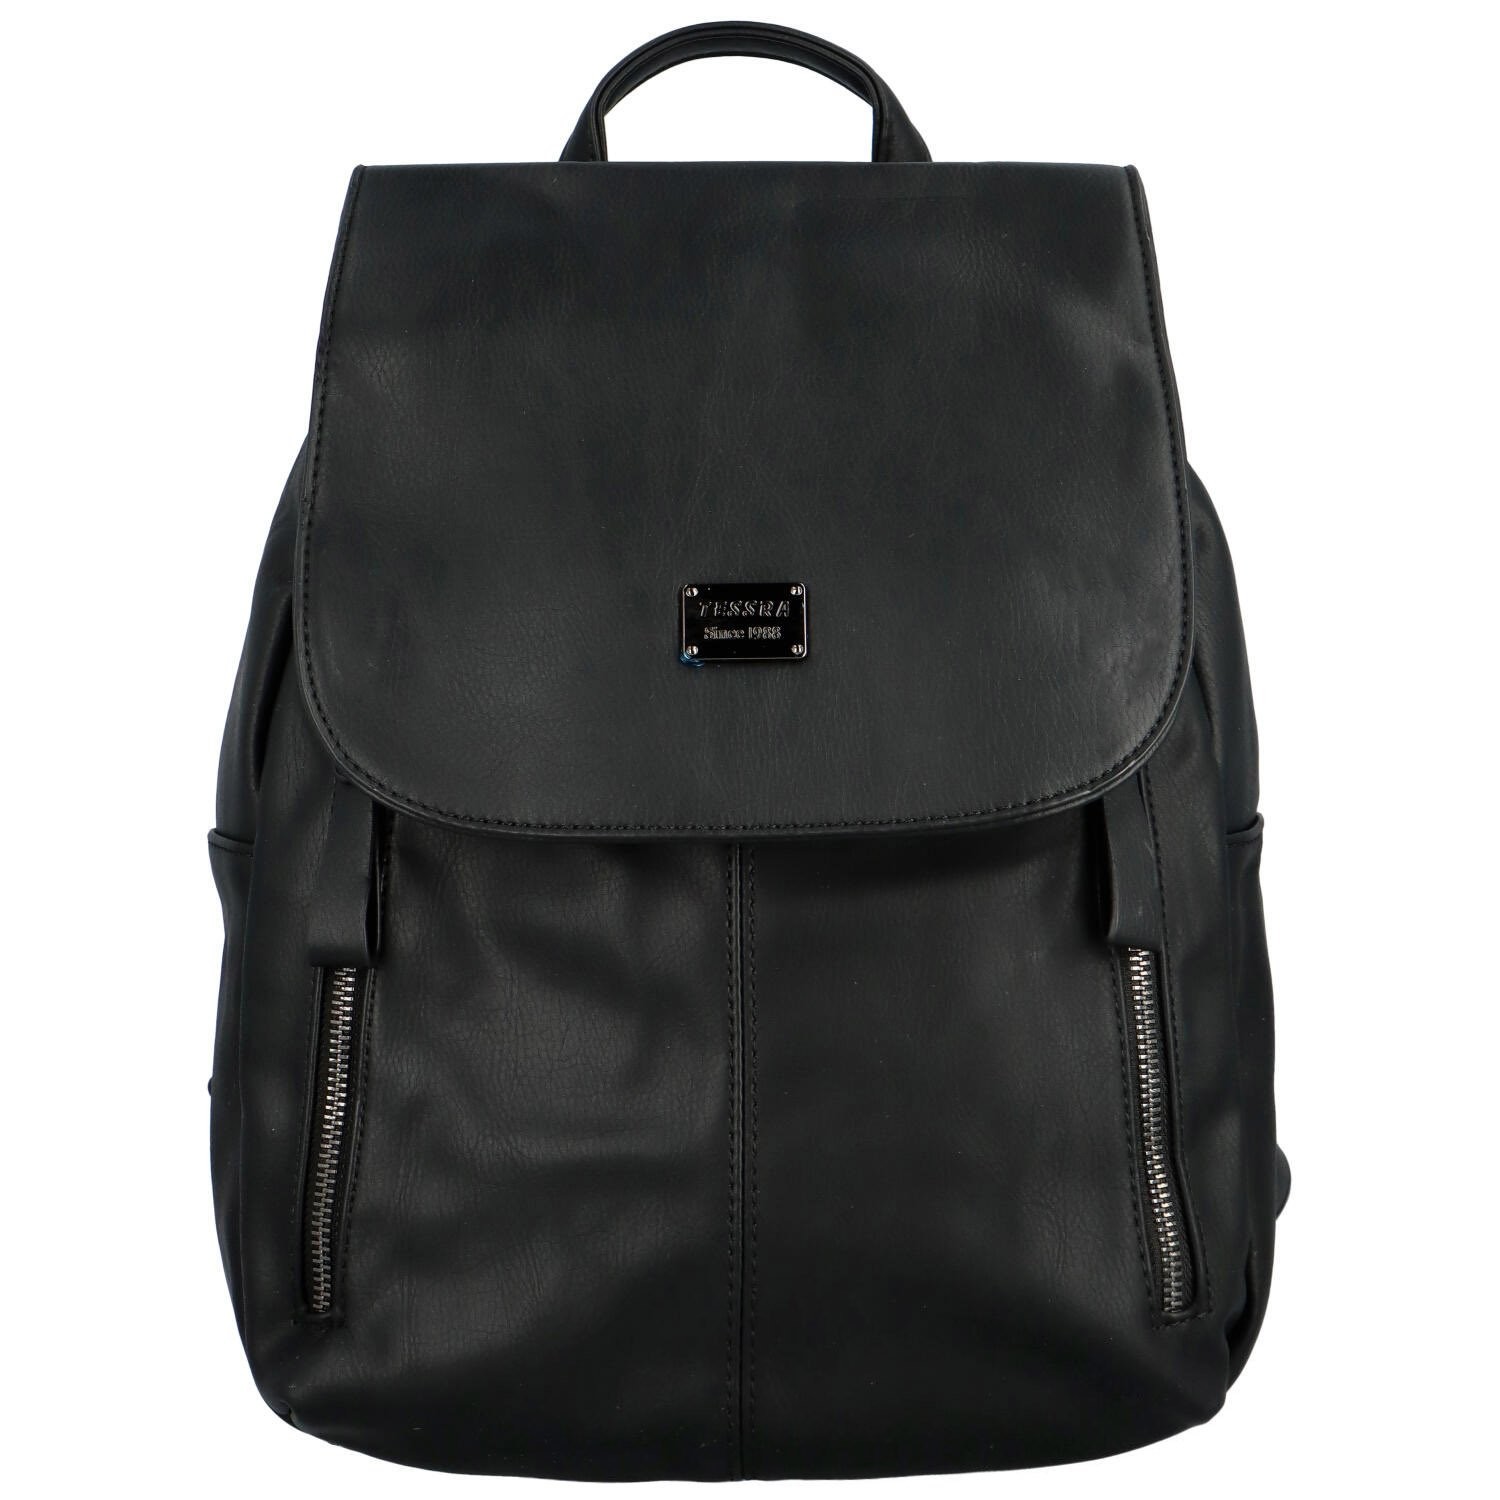 Stylový dámský kabelko-batoh Tessra Mavis, černá